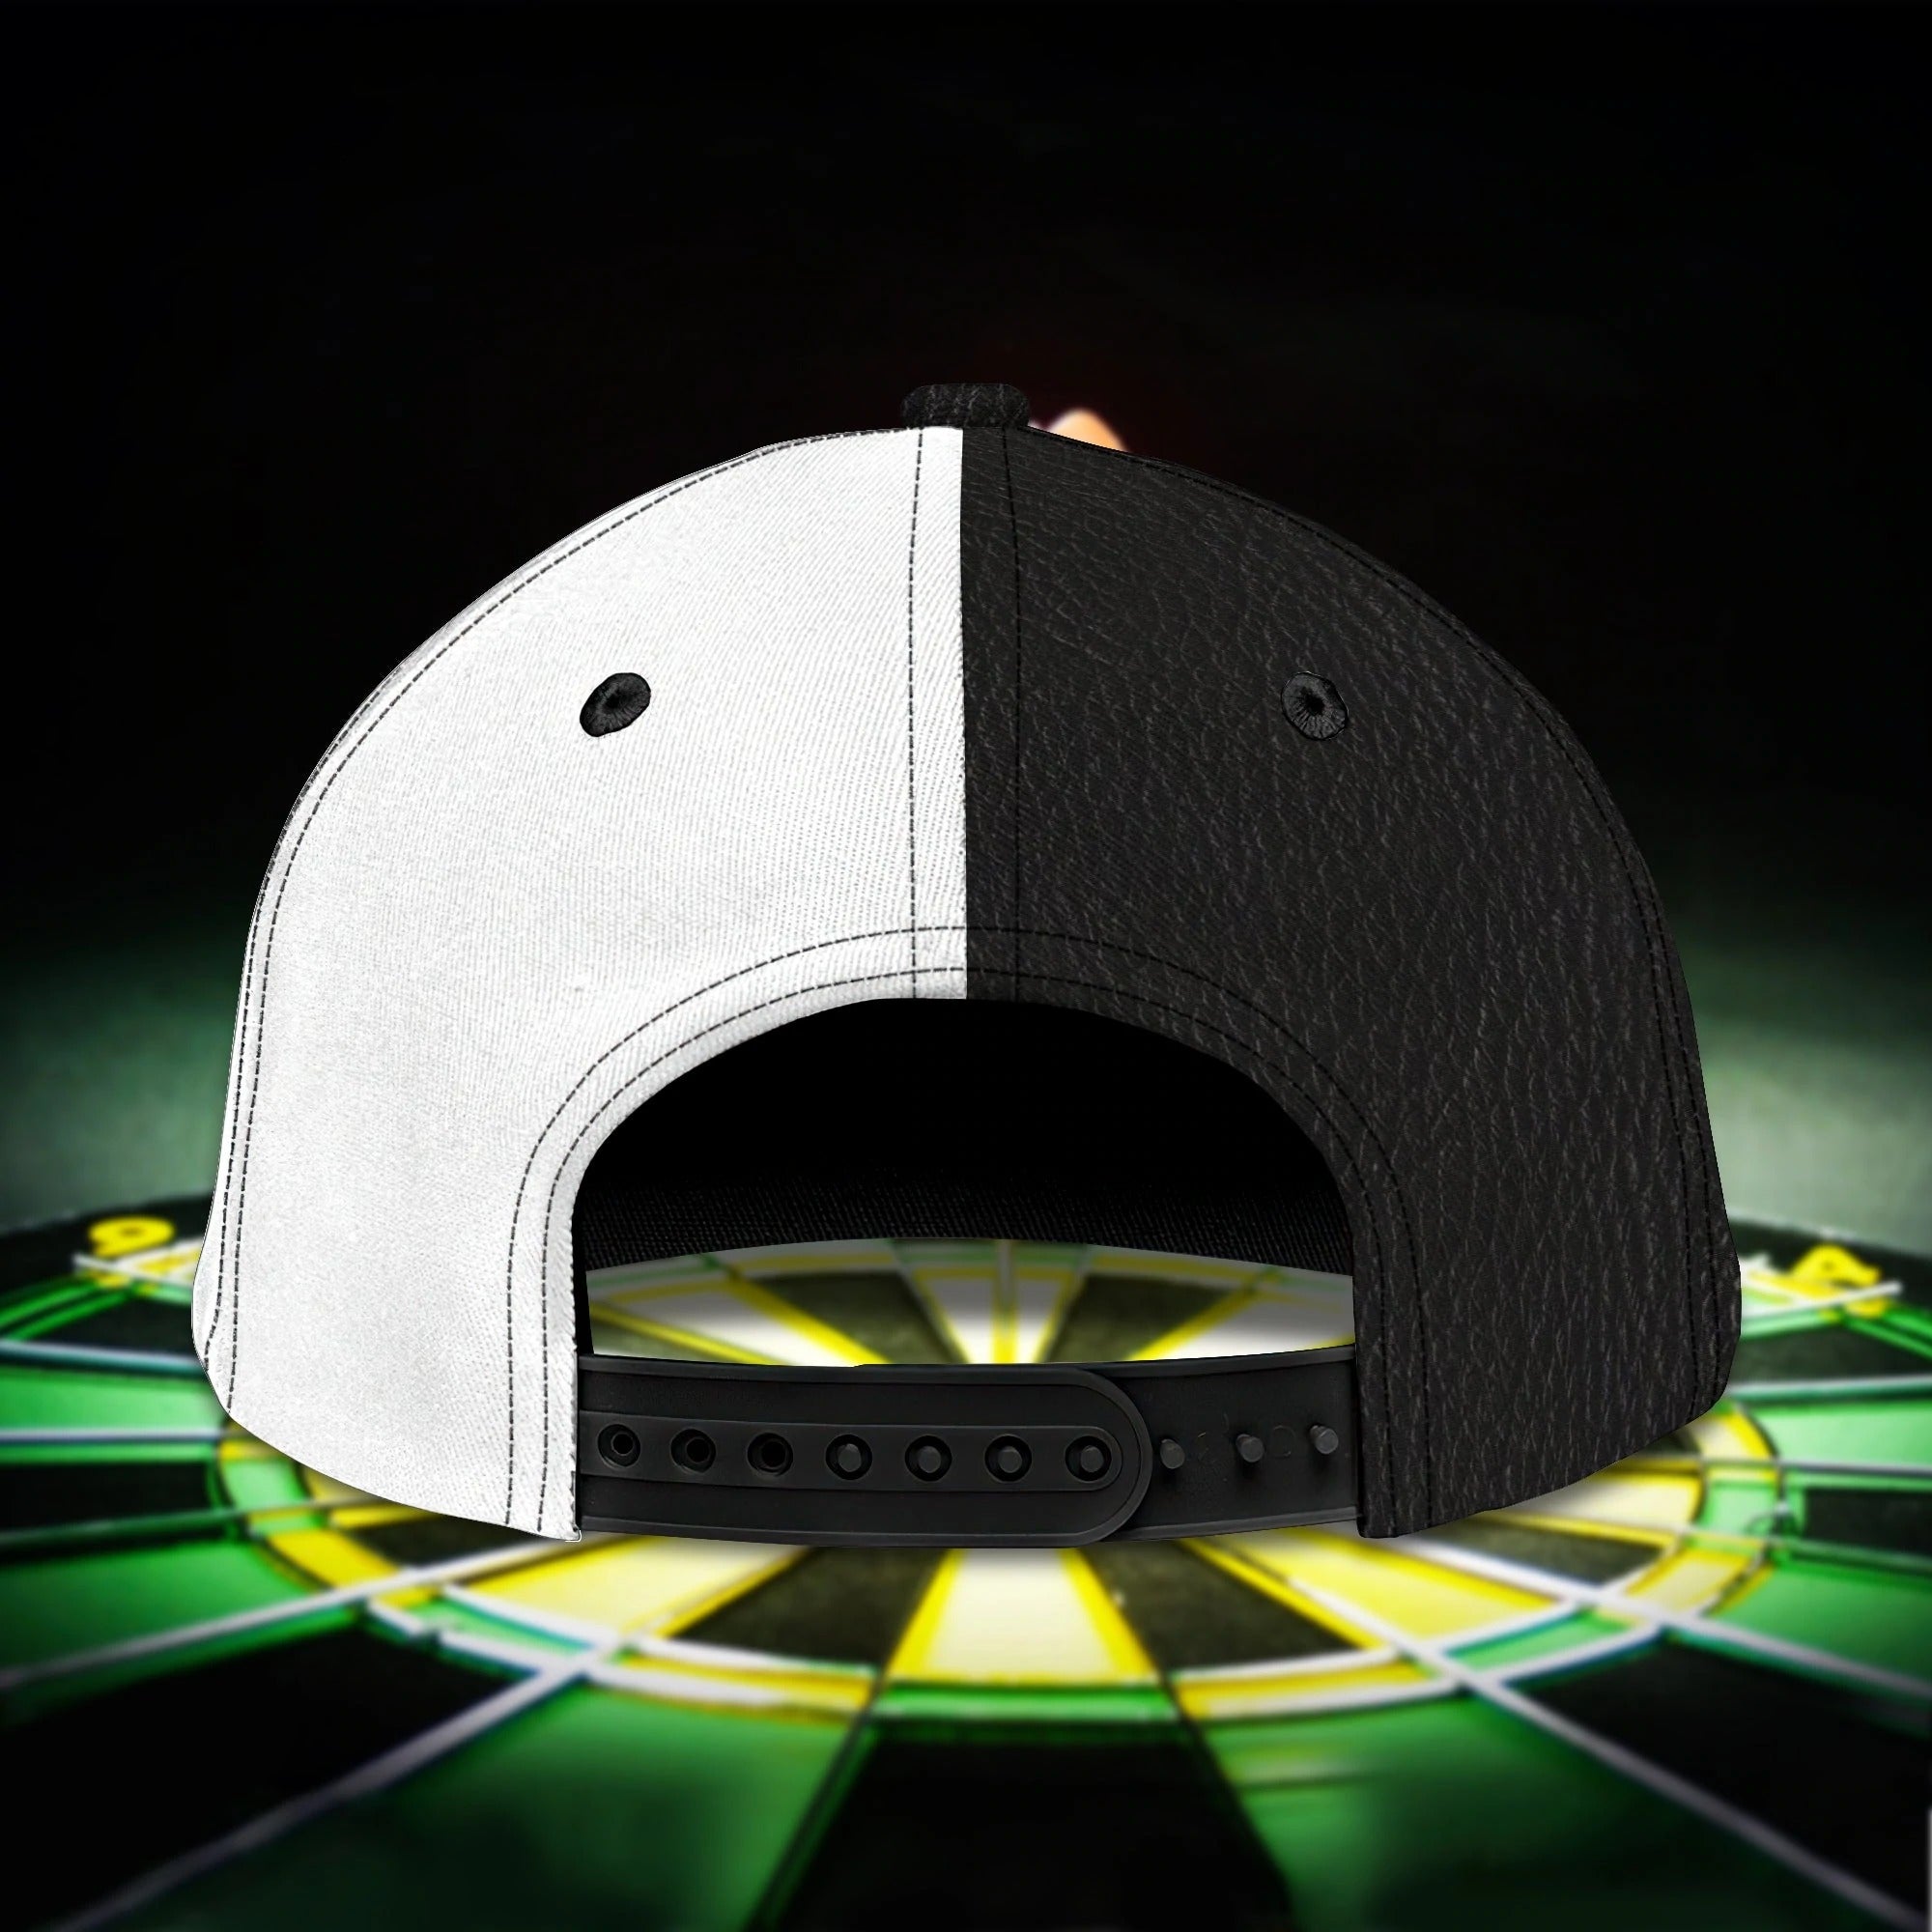 Personalized Dart Baseball Cap Full Printing/ Dart Hat For Men And Woman/ To My Friend Darter Cap Hat/ Darter Cap